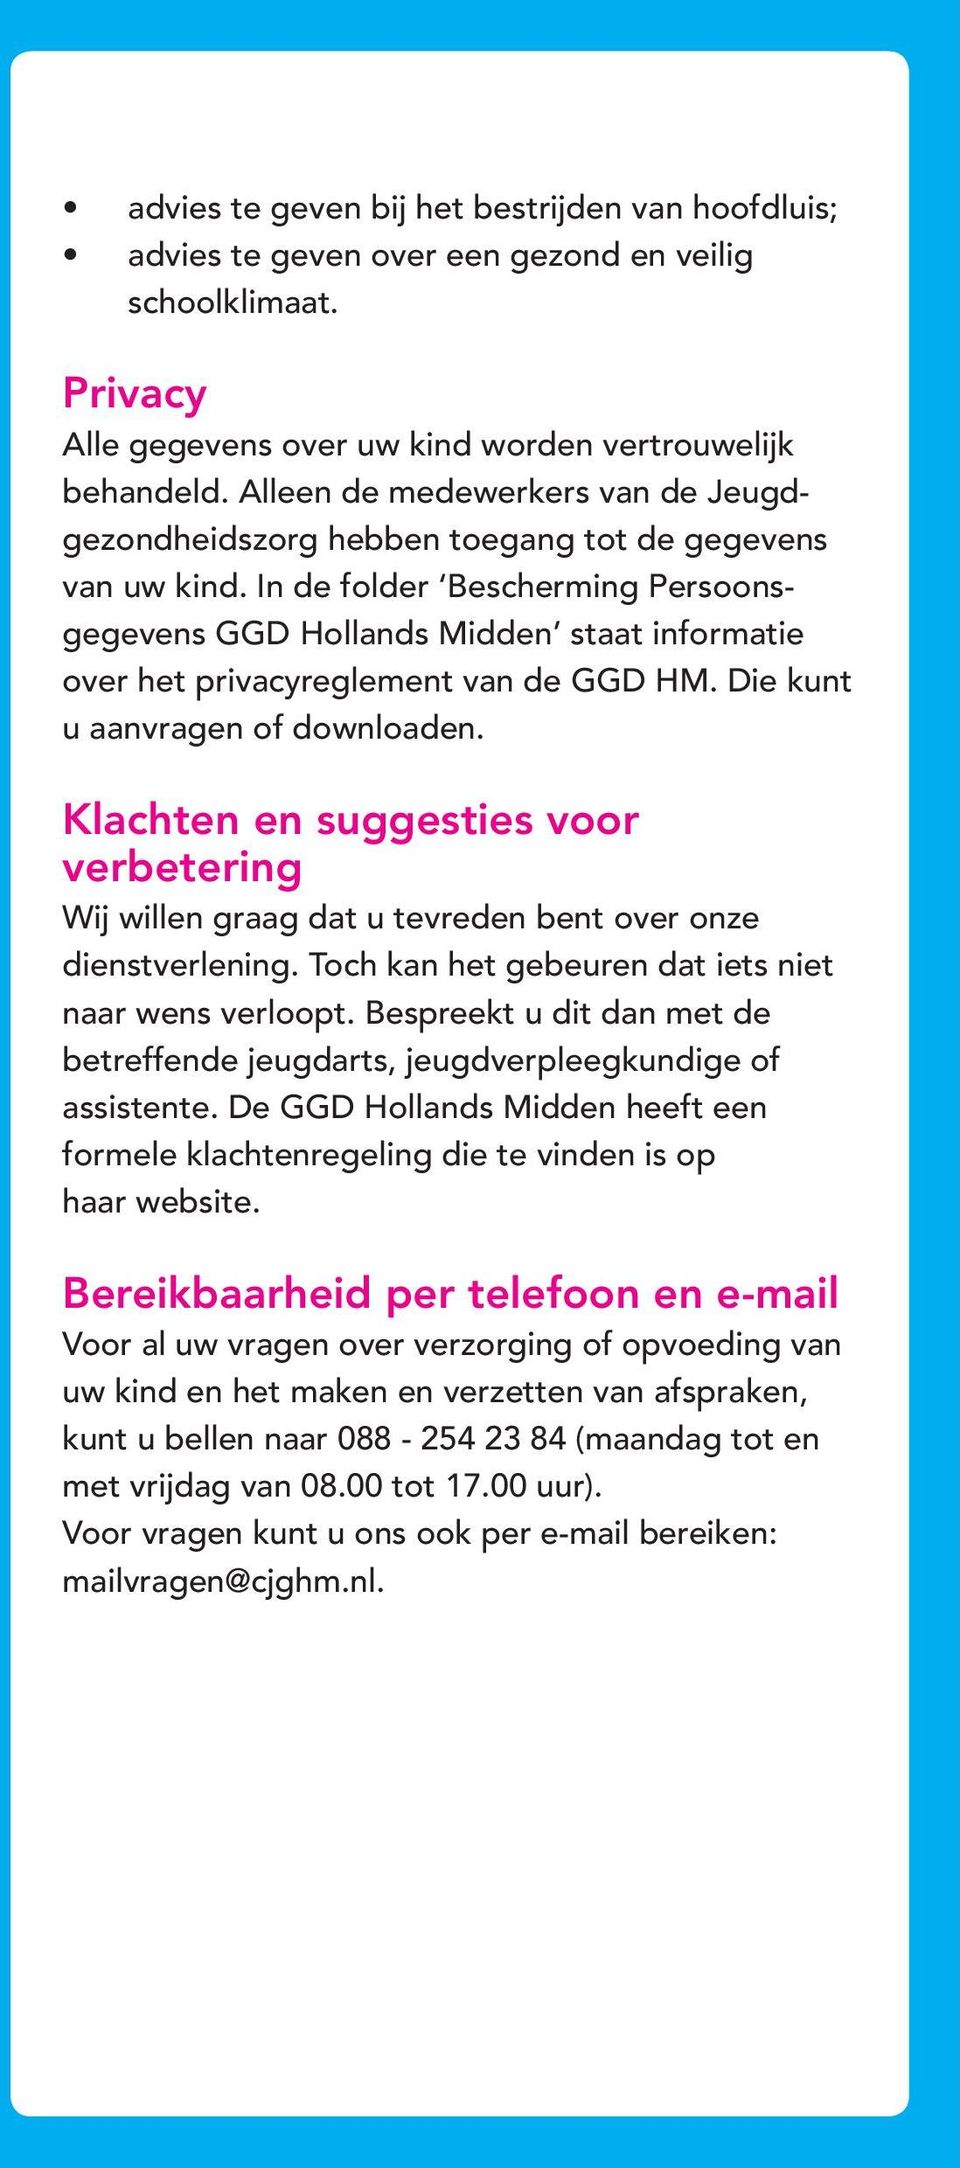 In de folder Bescherming Persoonsgegevens GGD Hollands Midden staat informatie over het privacyreglement van de GGD HM. Die kunt u aanvragen of downloaden.